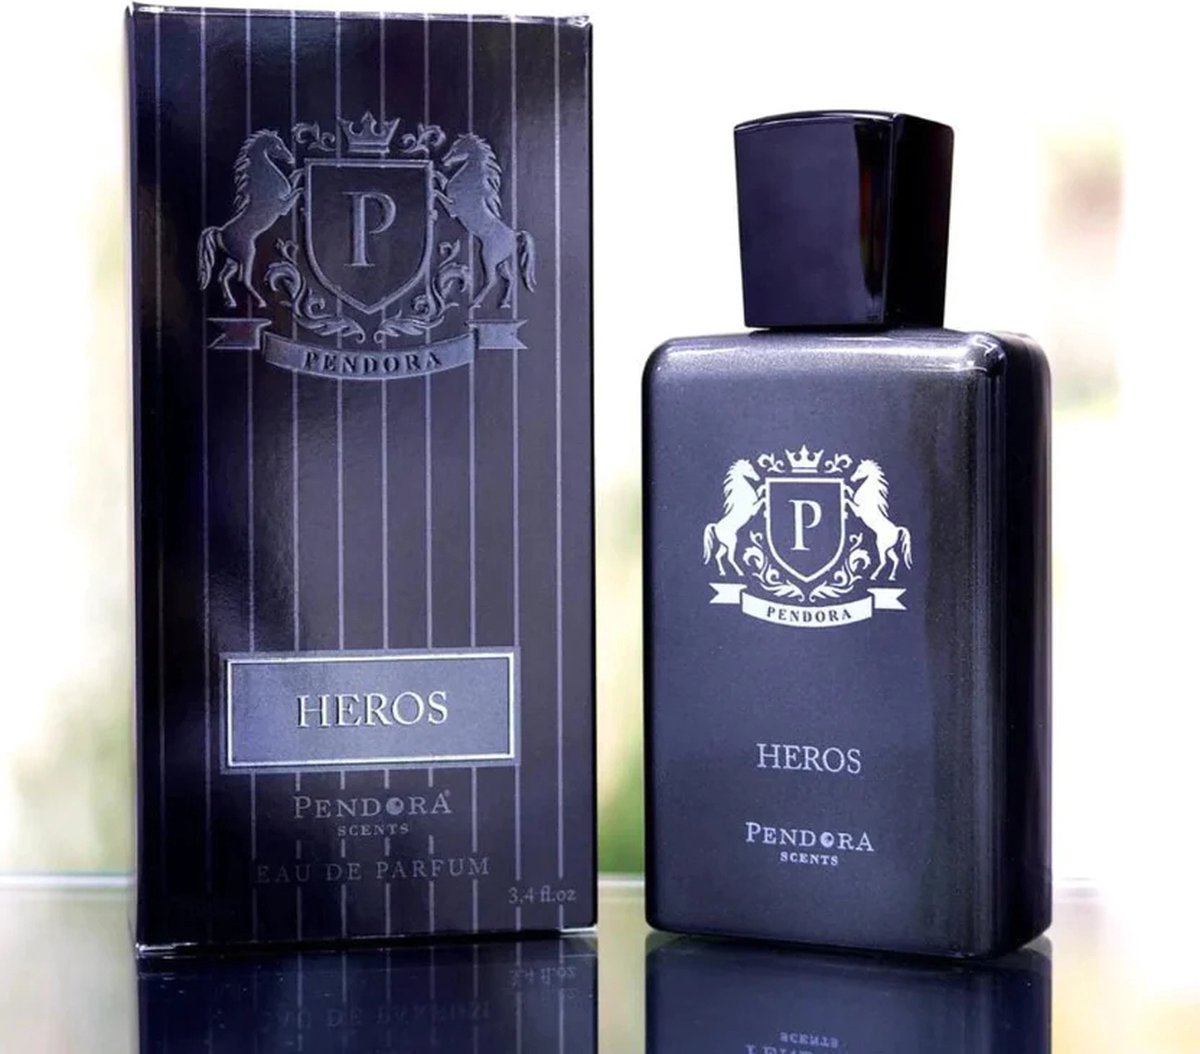 Pendora Scents - Heros eau de parfum - Herod